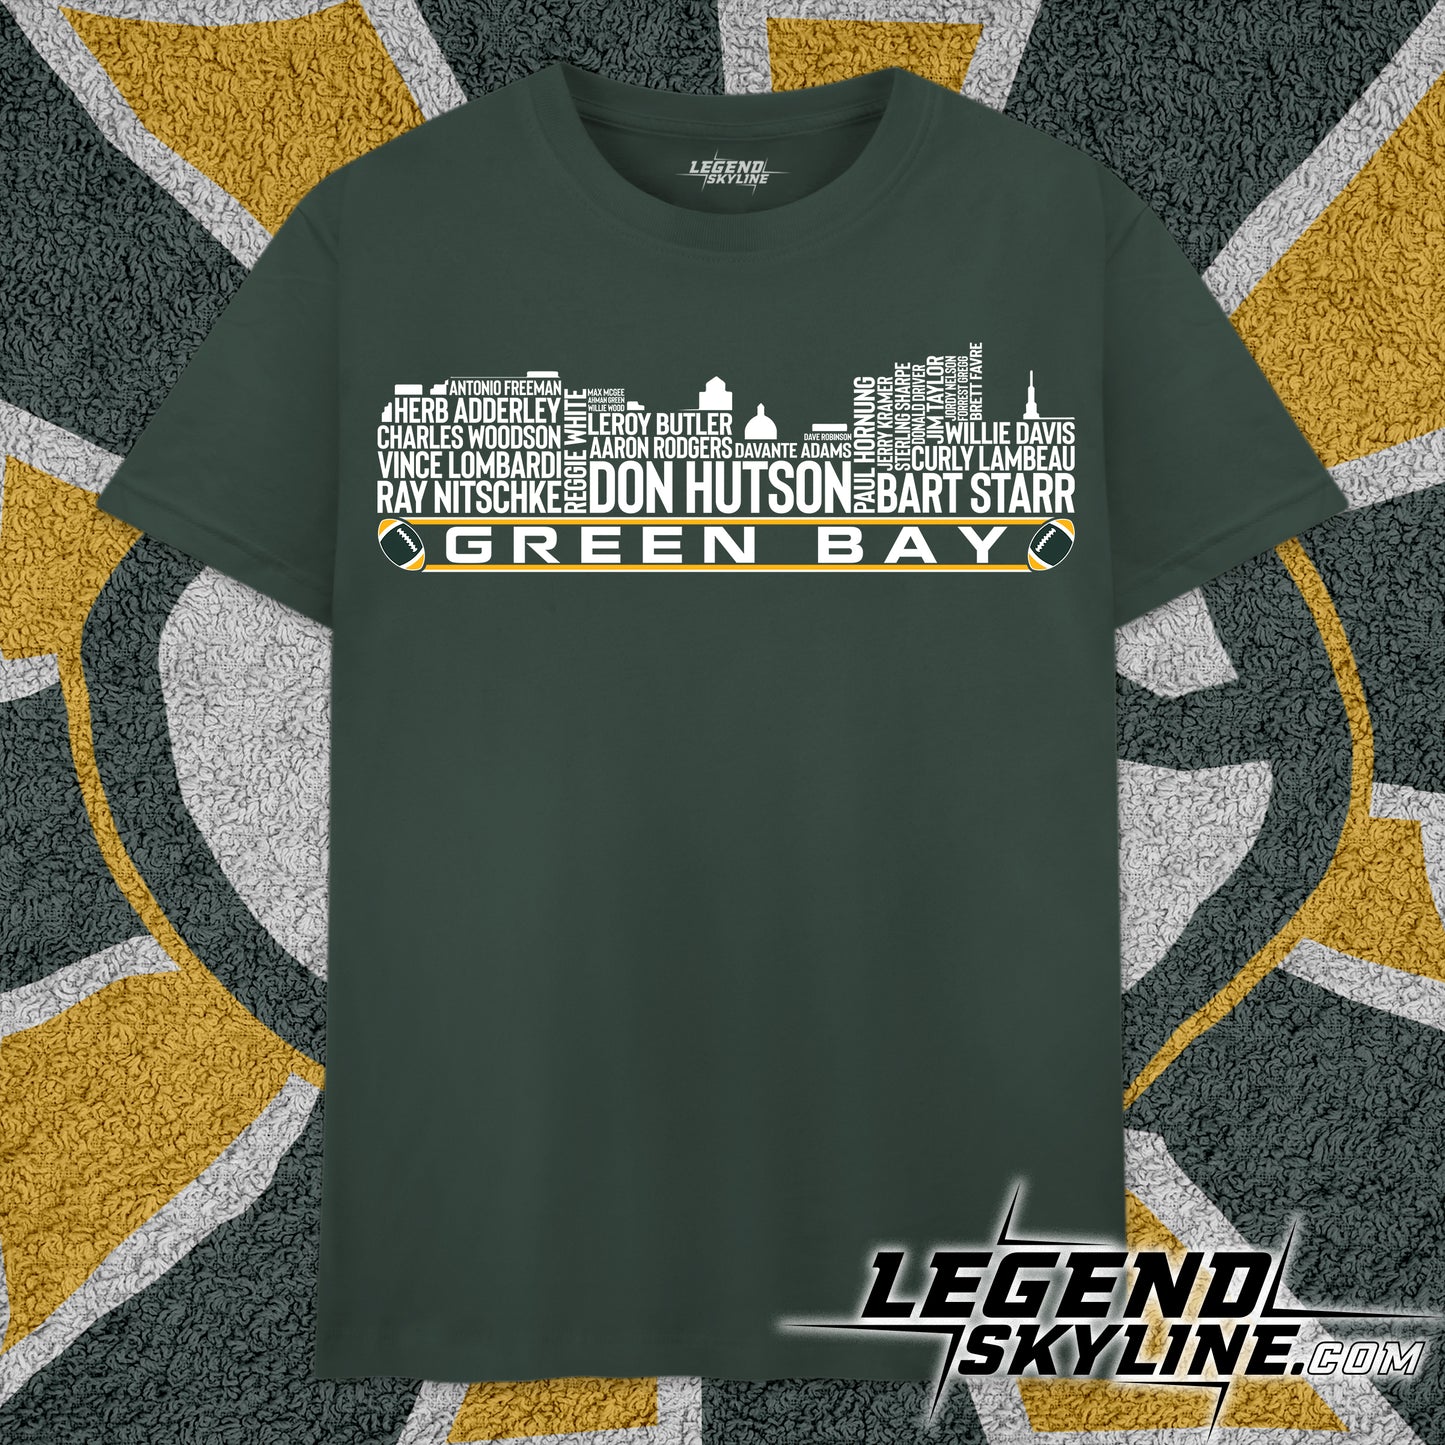 Green Bay Football Team All Time Legends Green Bay Skyline Shirt